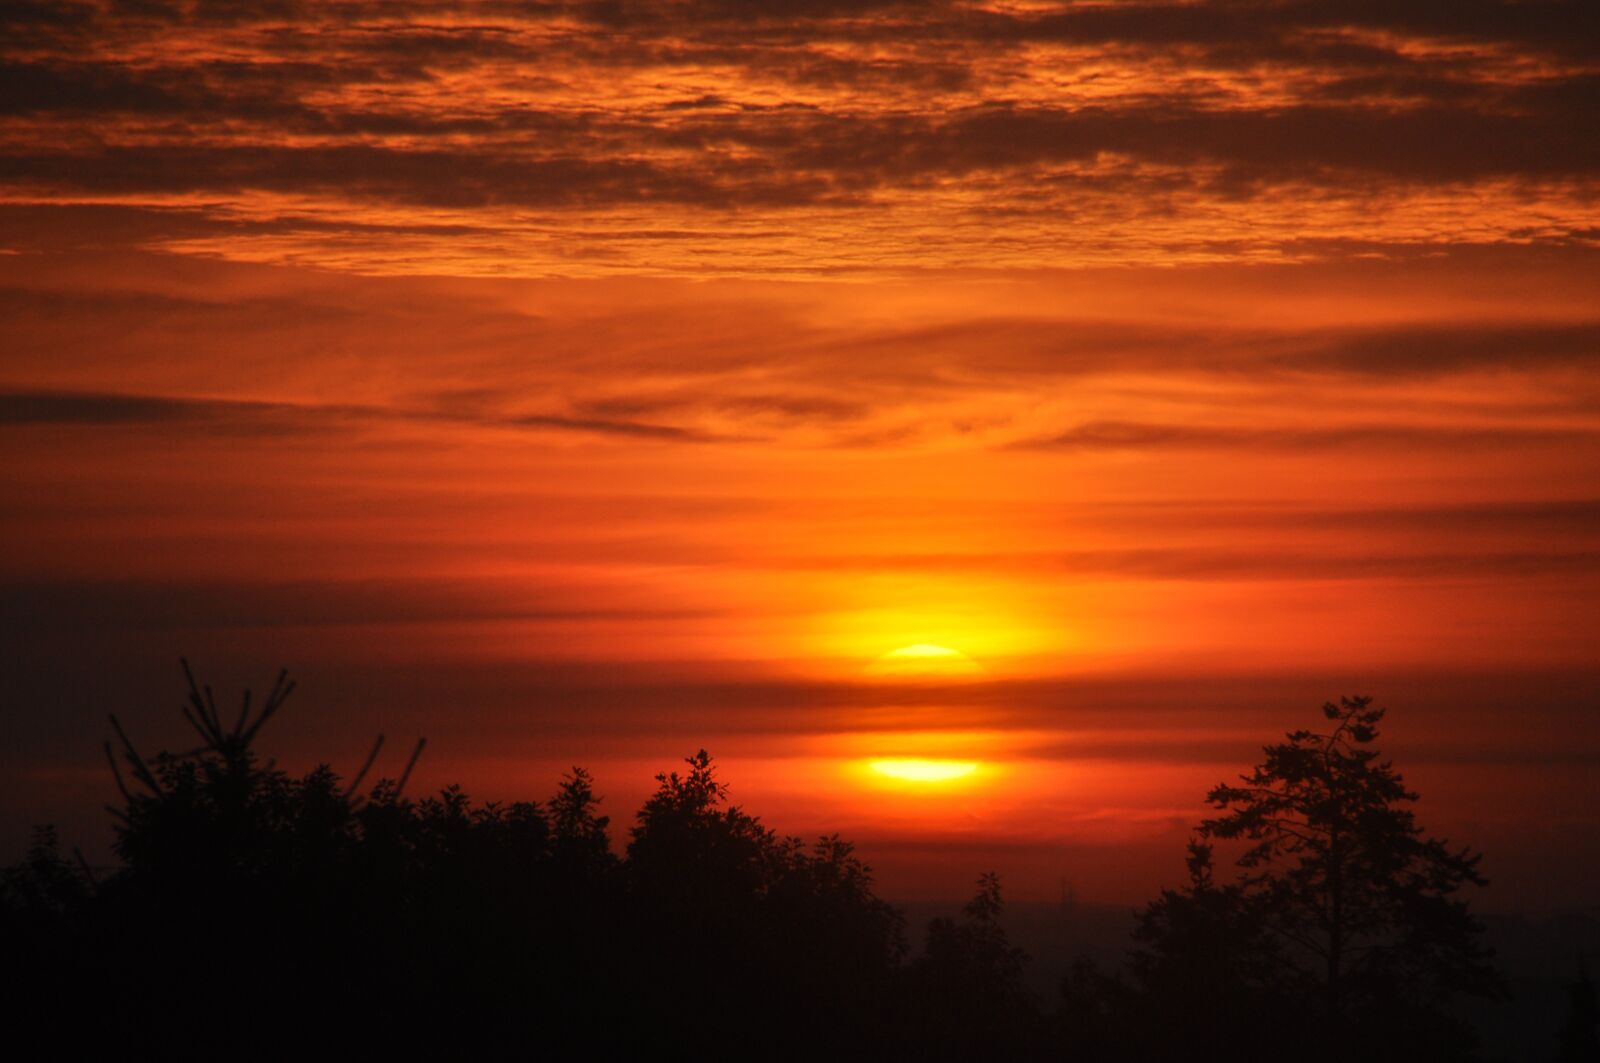 Nikon D90 sample photo. Sunset, sun, nature photography